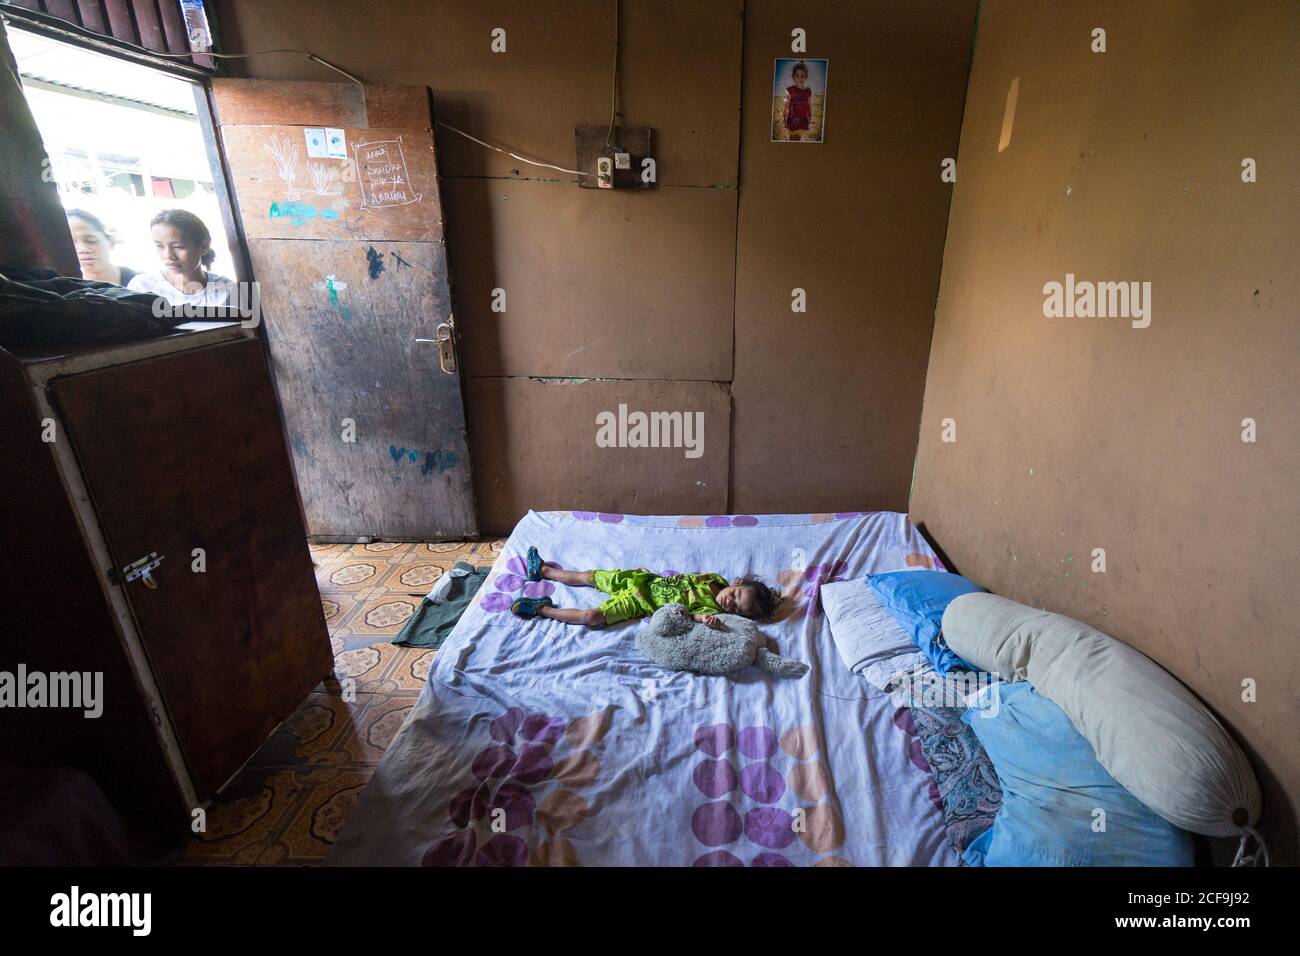 Dili, Timor oriental - 09 AOÛT 2018: Petit enfant dormant sur un grand lit dans une maison pauvre et misérable avec des murs vides et peu de meubles Banque D'Images